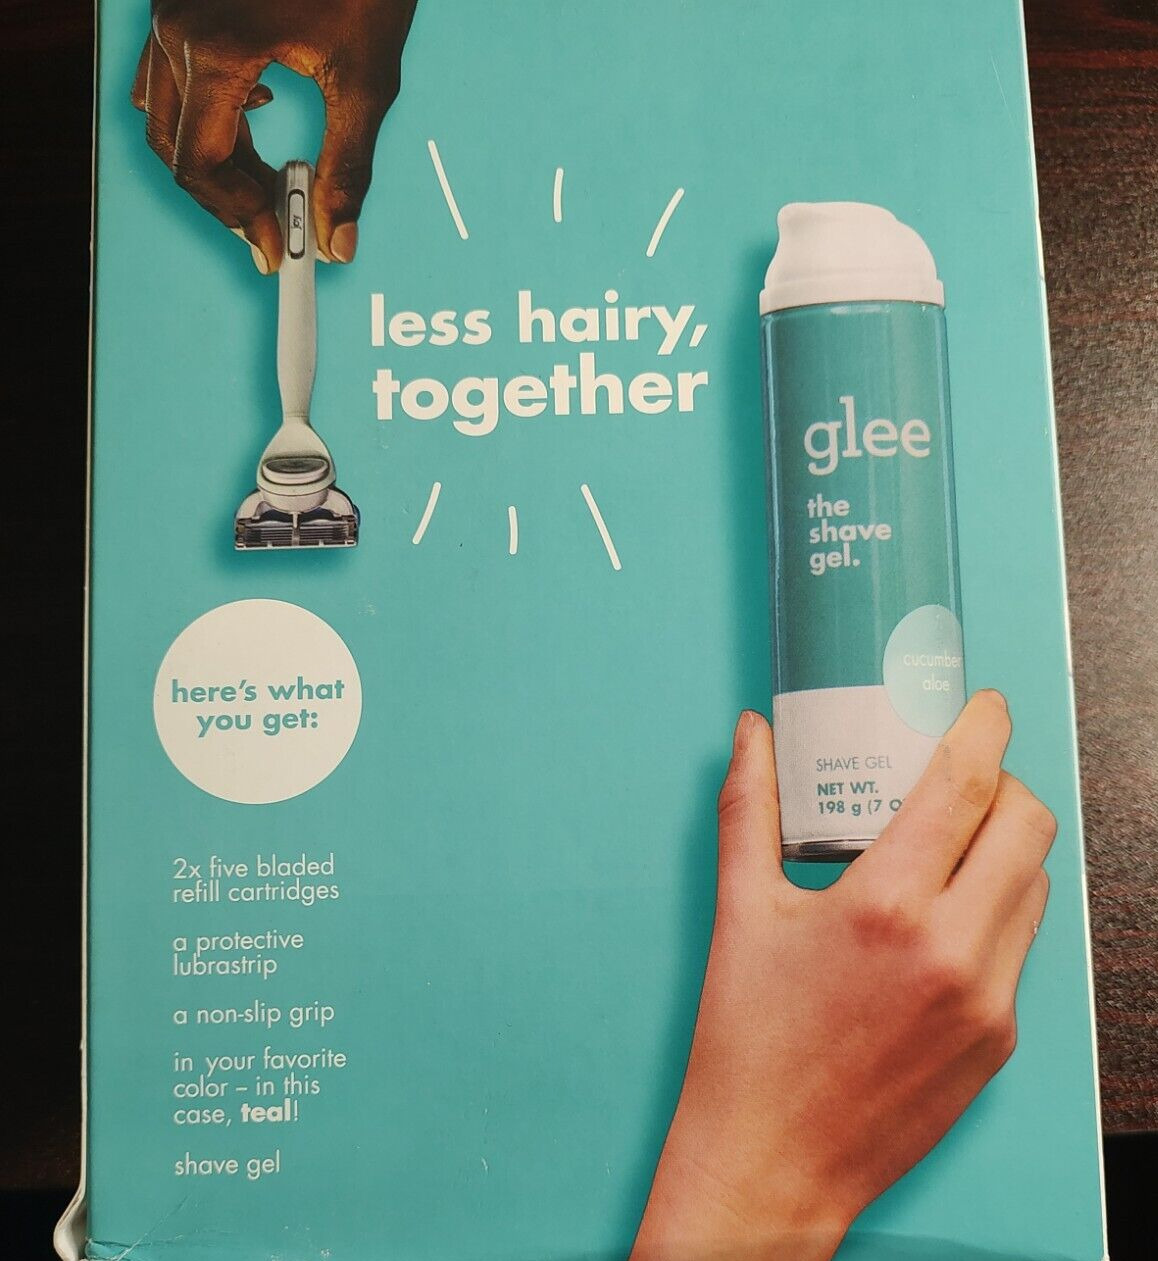 Joy and Glee Women's Shaving Kit